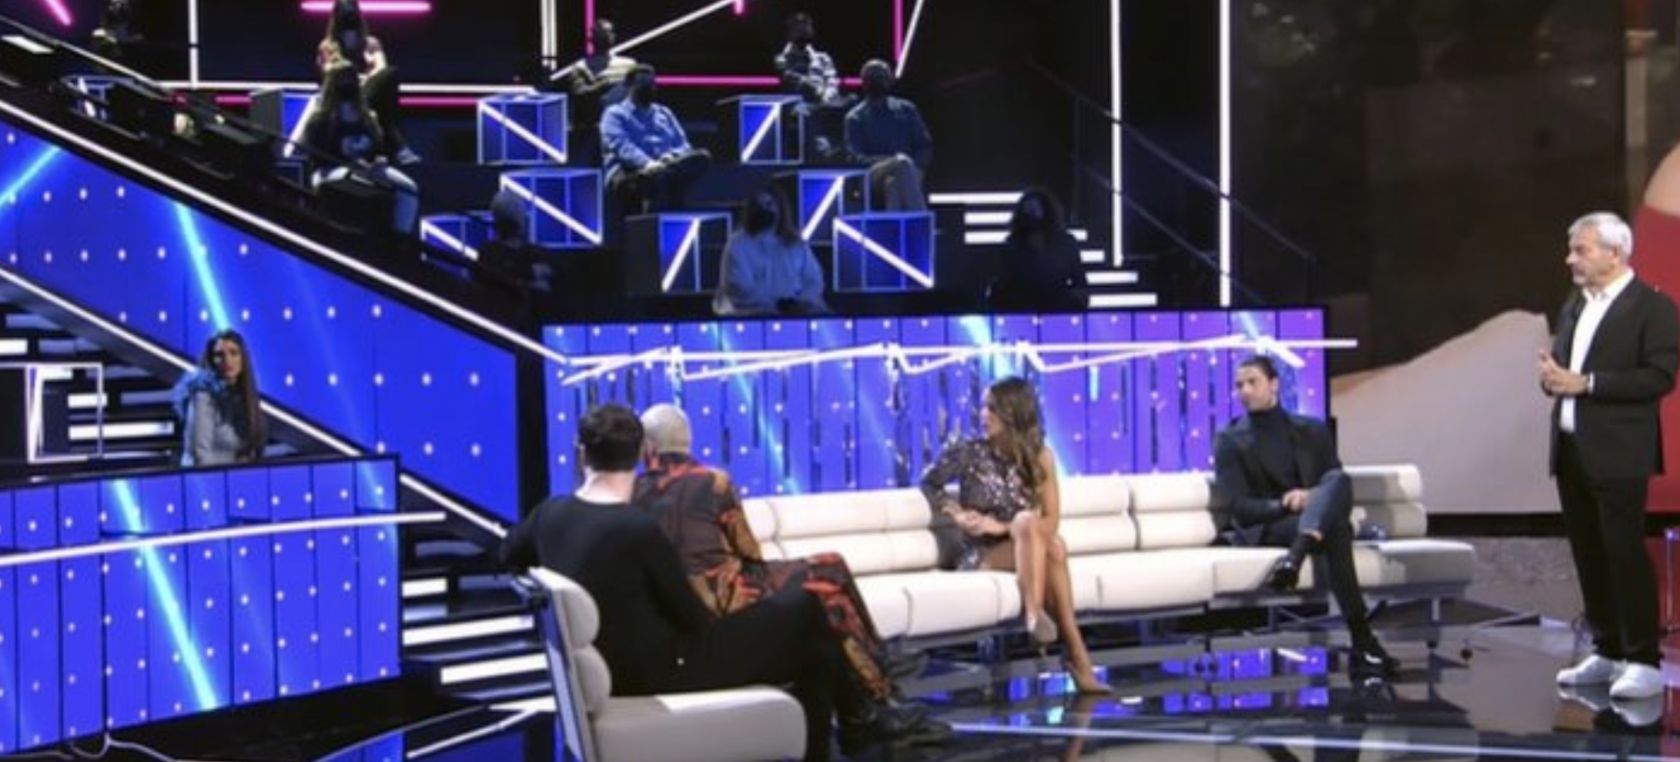 Ausencias en el Debate Final de ‘Secret Story’: ¿Por qué faltaron Sandra Pica, Lucía Pariente y Edmundo?